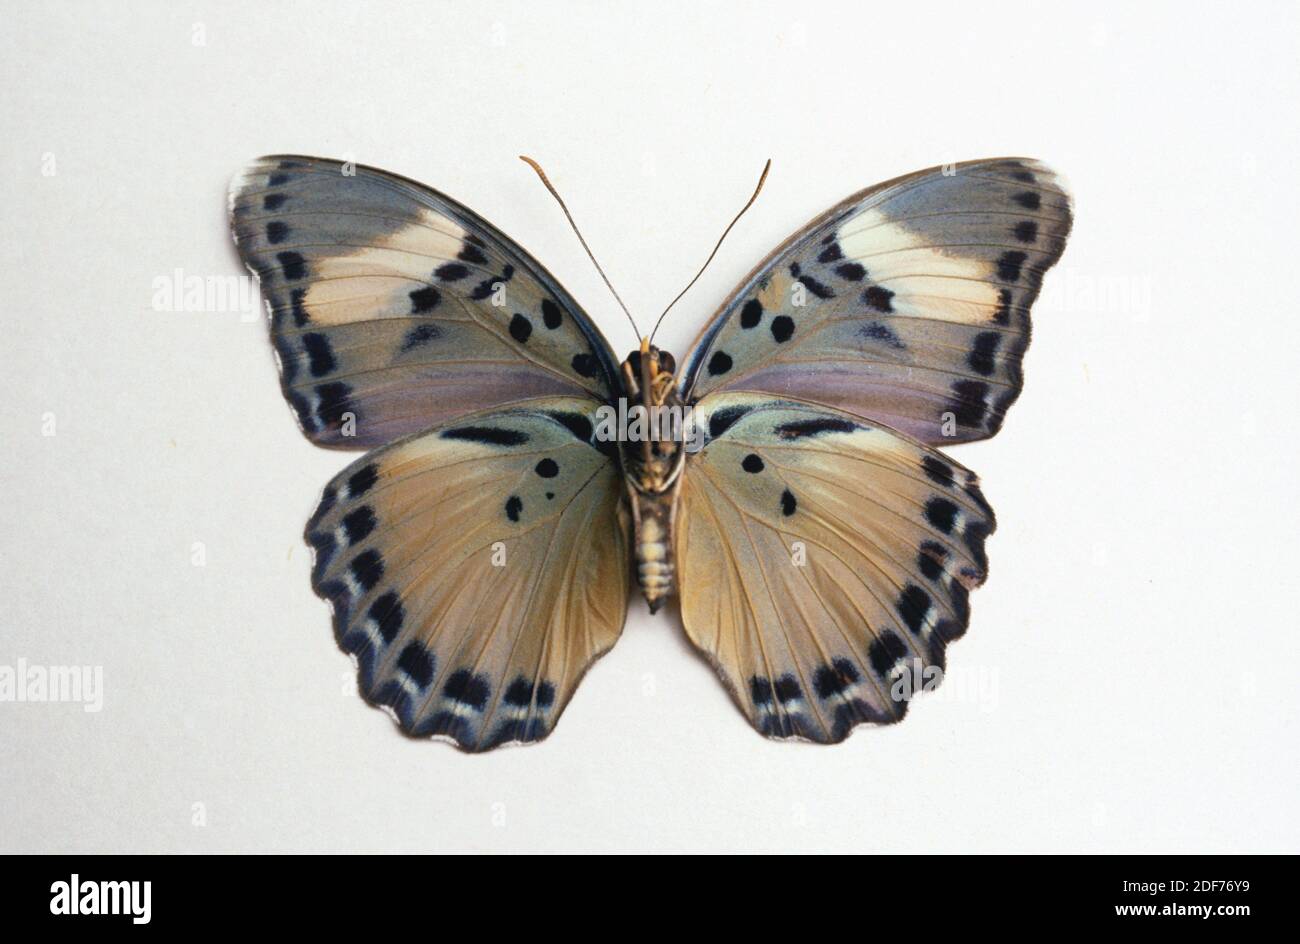 THEMIS forester (Euphaedra themis) è una farfalla originaria dell'Africa centrale. Superficie ventrale. Foto Stock